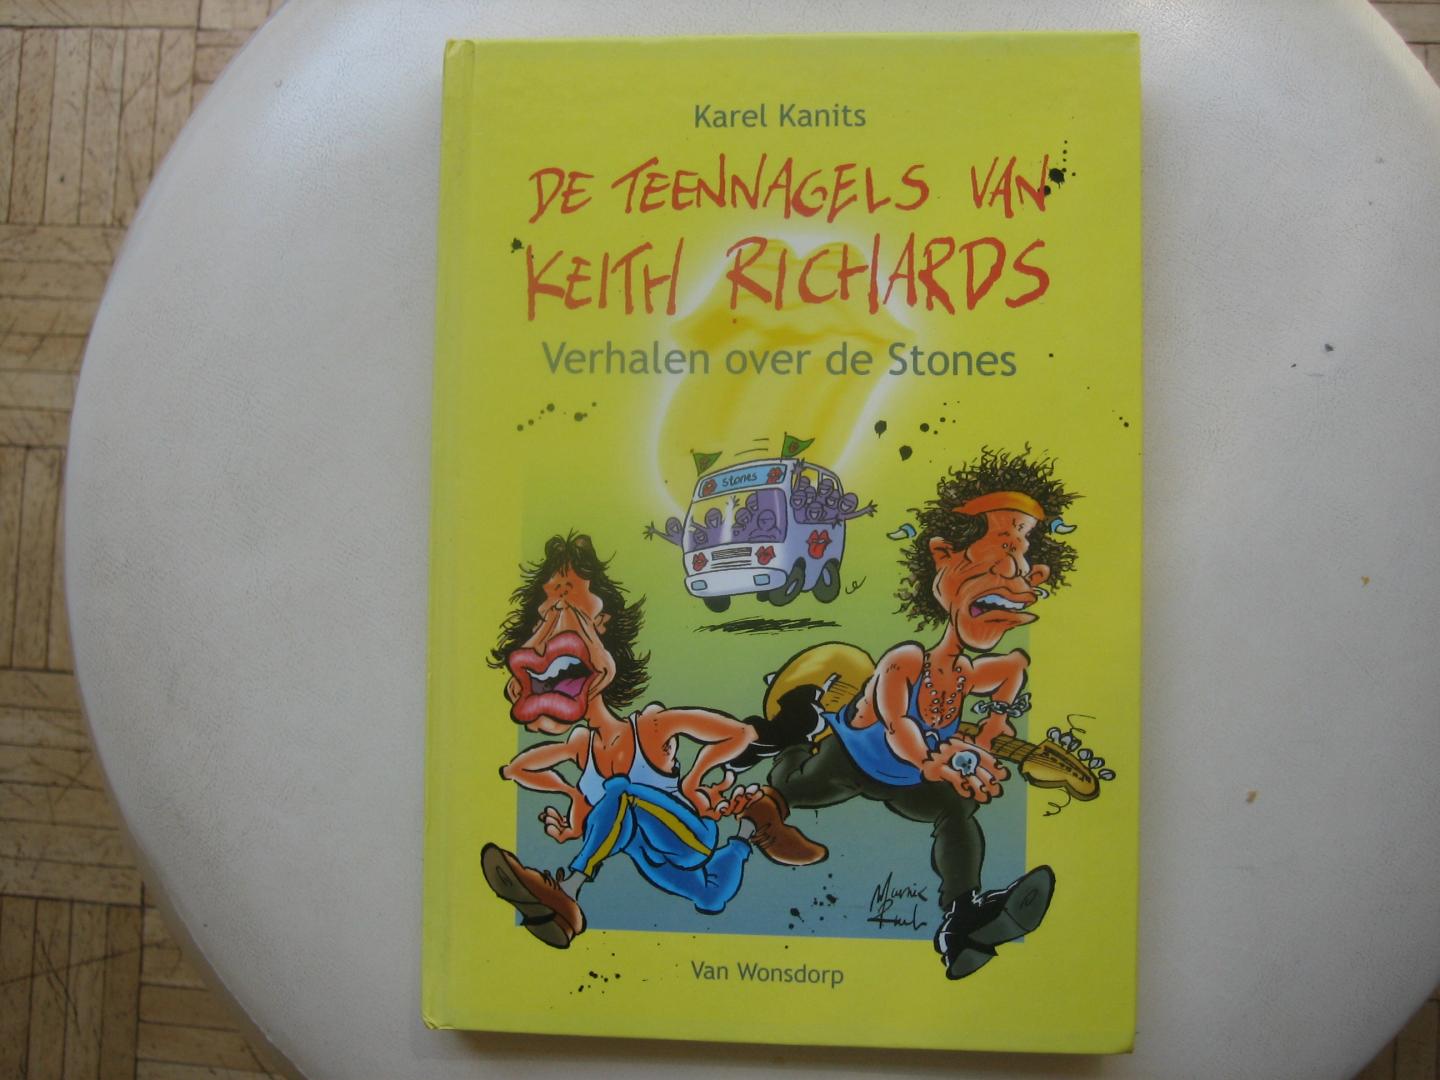 Karel Kanits - De teennagels van Keith Richards /GESIGNEERD door auteur